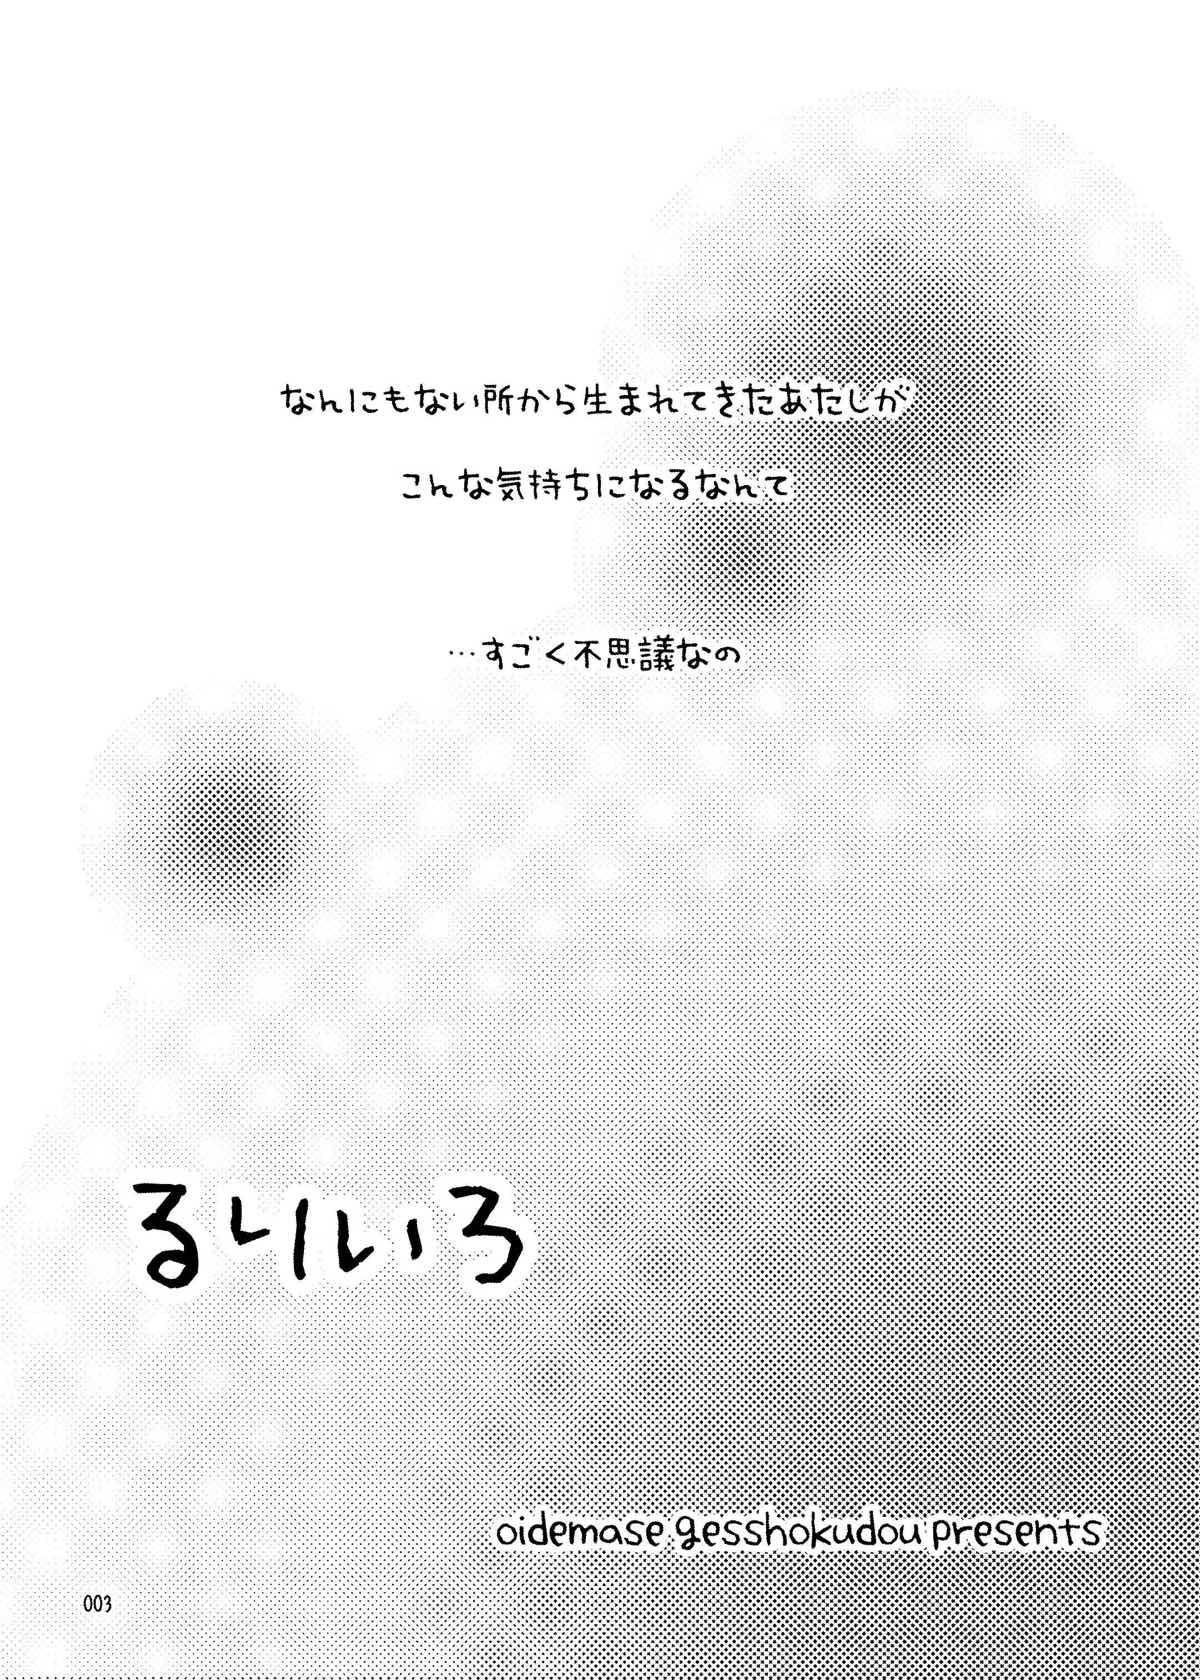 Kink RURI-IRO - Celestial silfade story Gaybukkake - Page 3